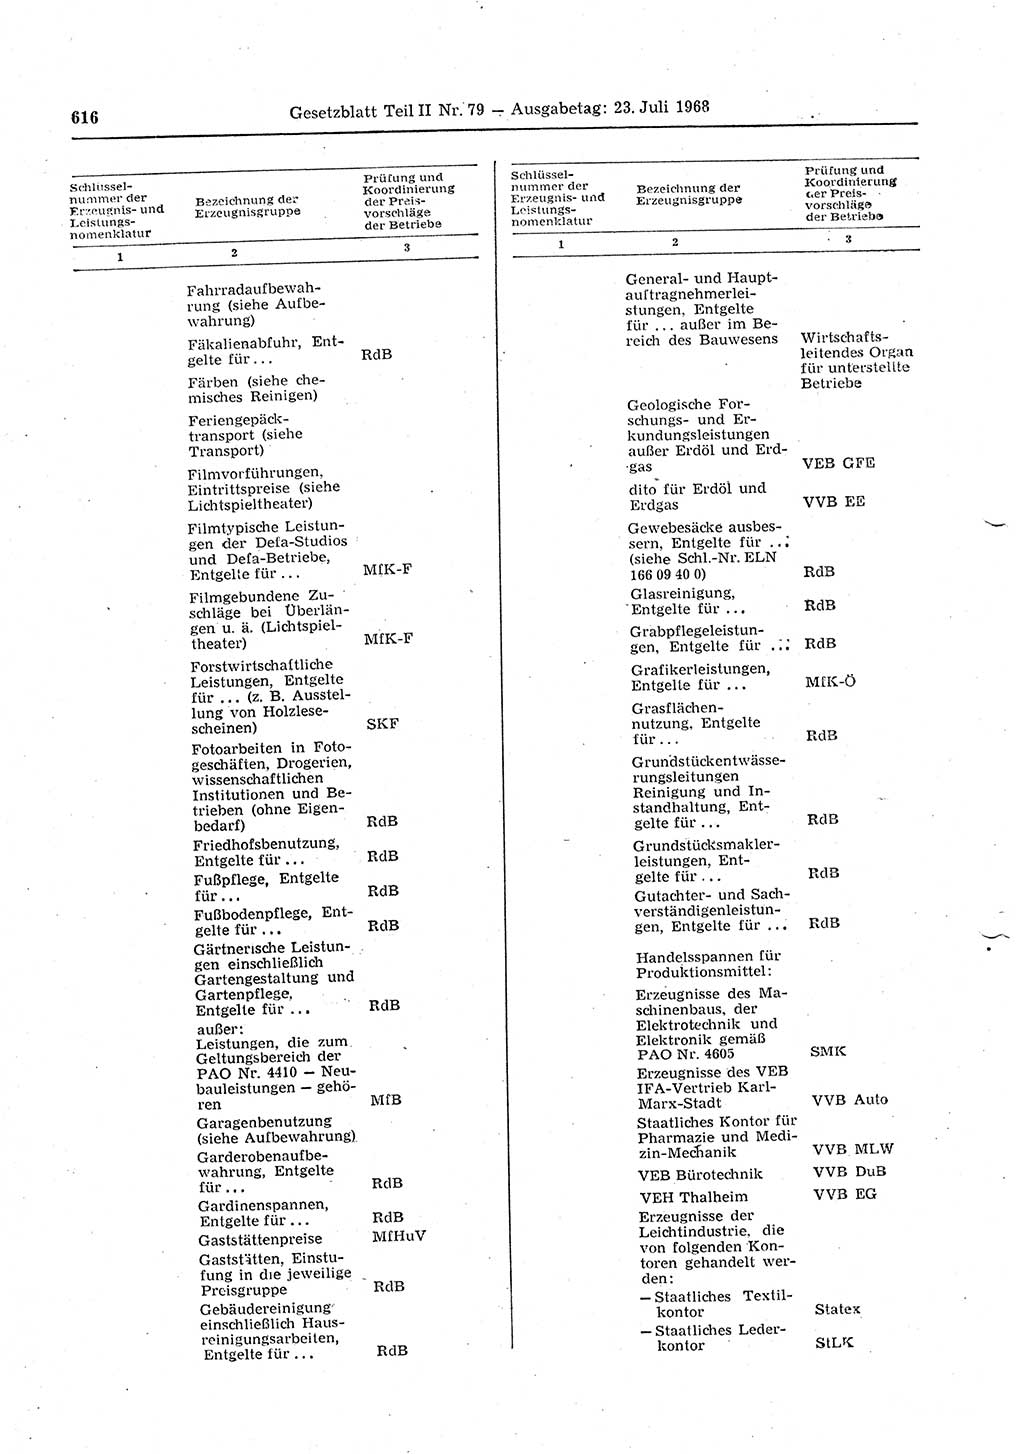 Gesetzblatt (GBl.) der Deutschen Demokratischen Republik (DDR) Teil ⅠⅠ 1968, Seite 616 (GBl. DDR ⅠⅠ 1968, S. 616)